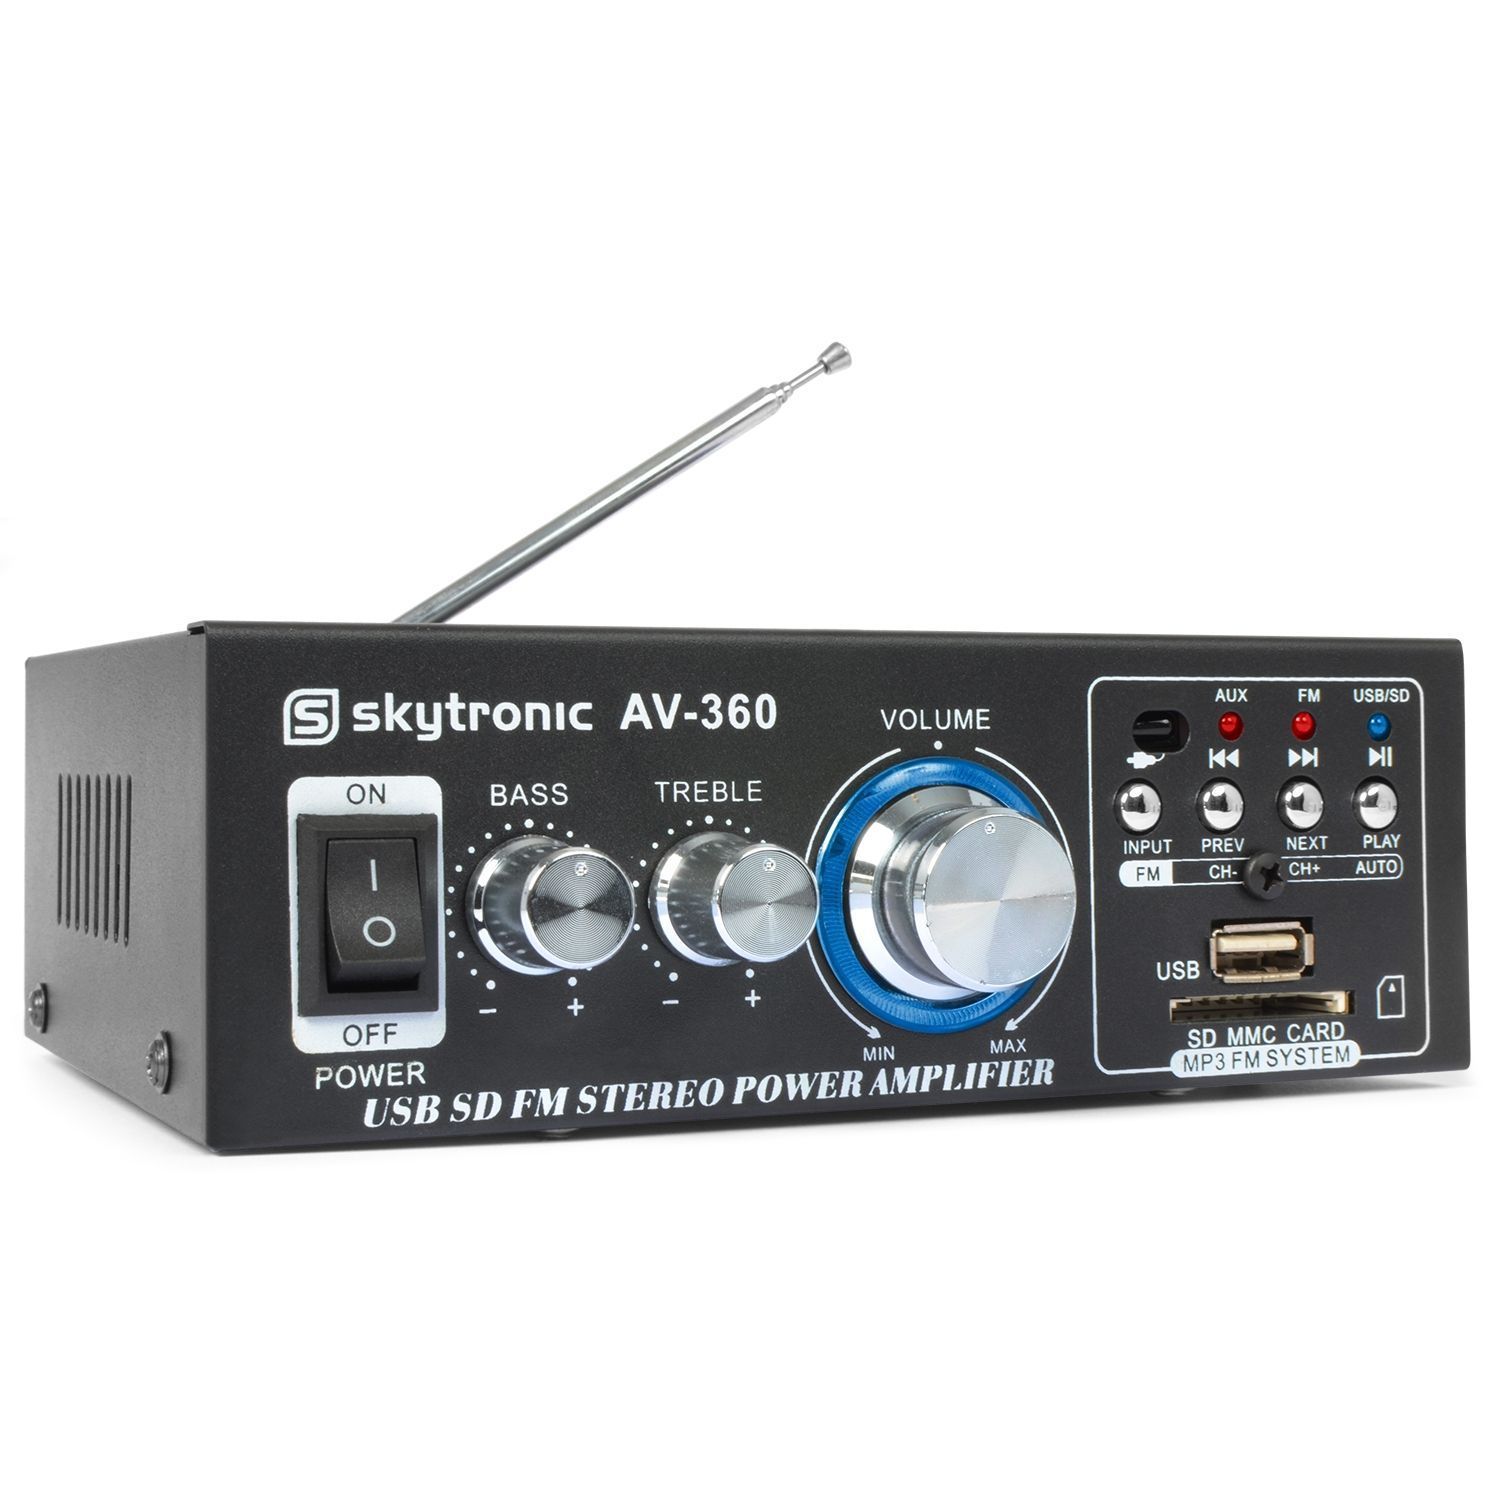 Moment opstelling 鍔 SkyTronic AV-360 stereo versterker met mp3 speler en afstandsbediening  kopen?